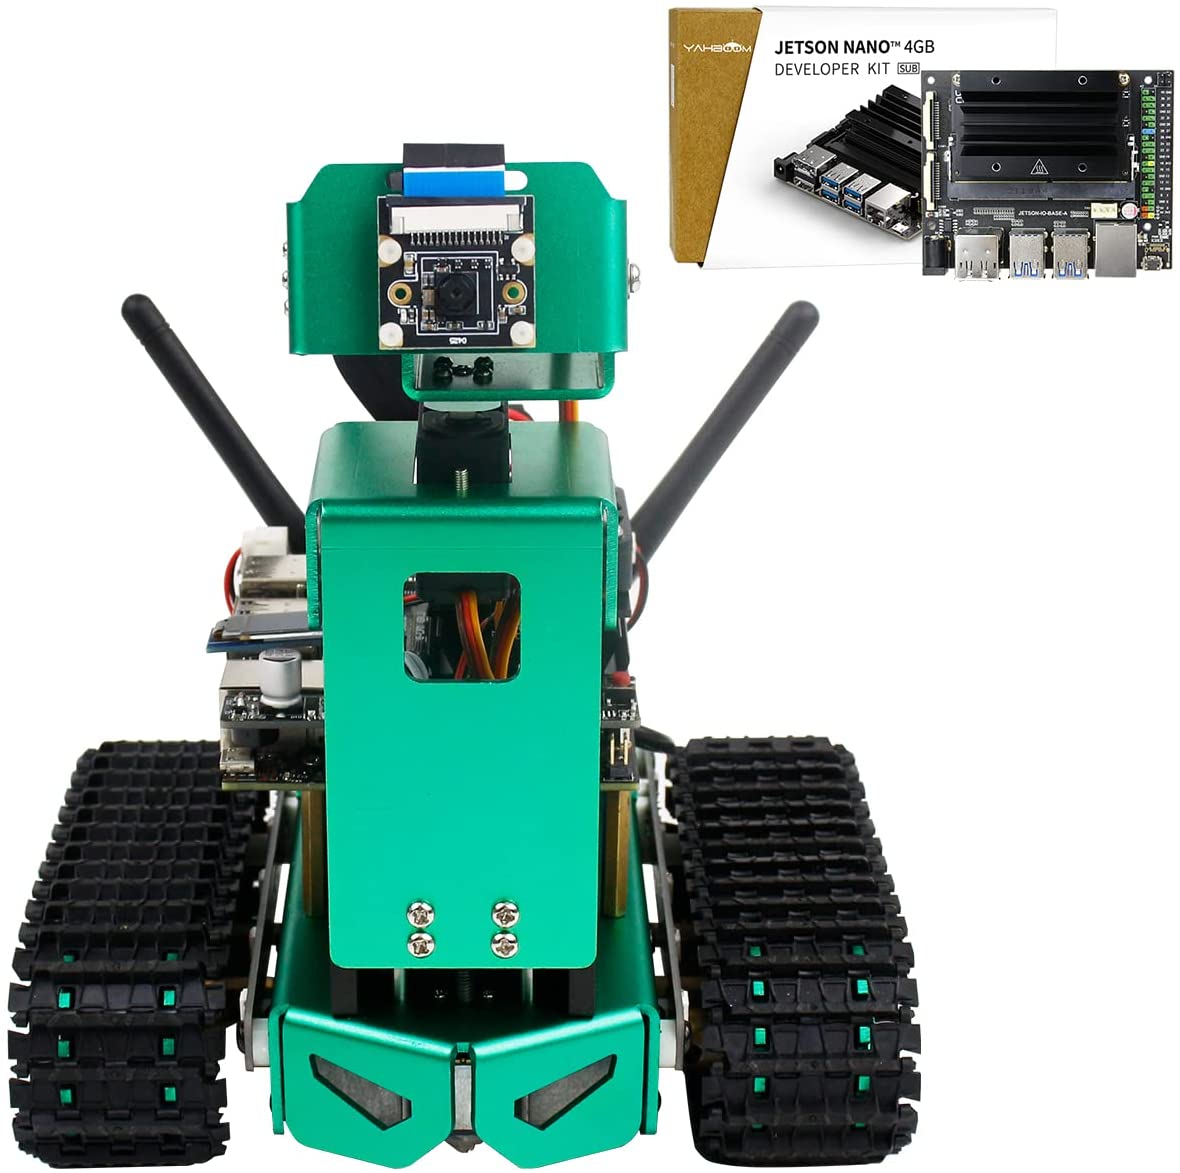 YAHBOOM ROBOT AI KIT DE CODIFICACIÓN ROBÓTICA PILOTO AUTOMÁTICO, SEGUIMIENTO DE OBJETOS CON Jetson Nano 4GB SUB